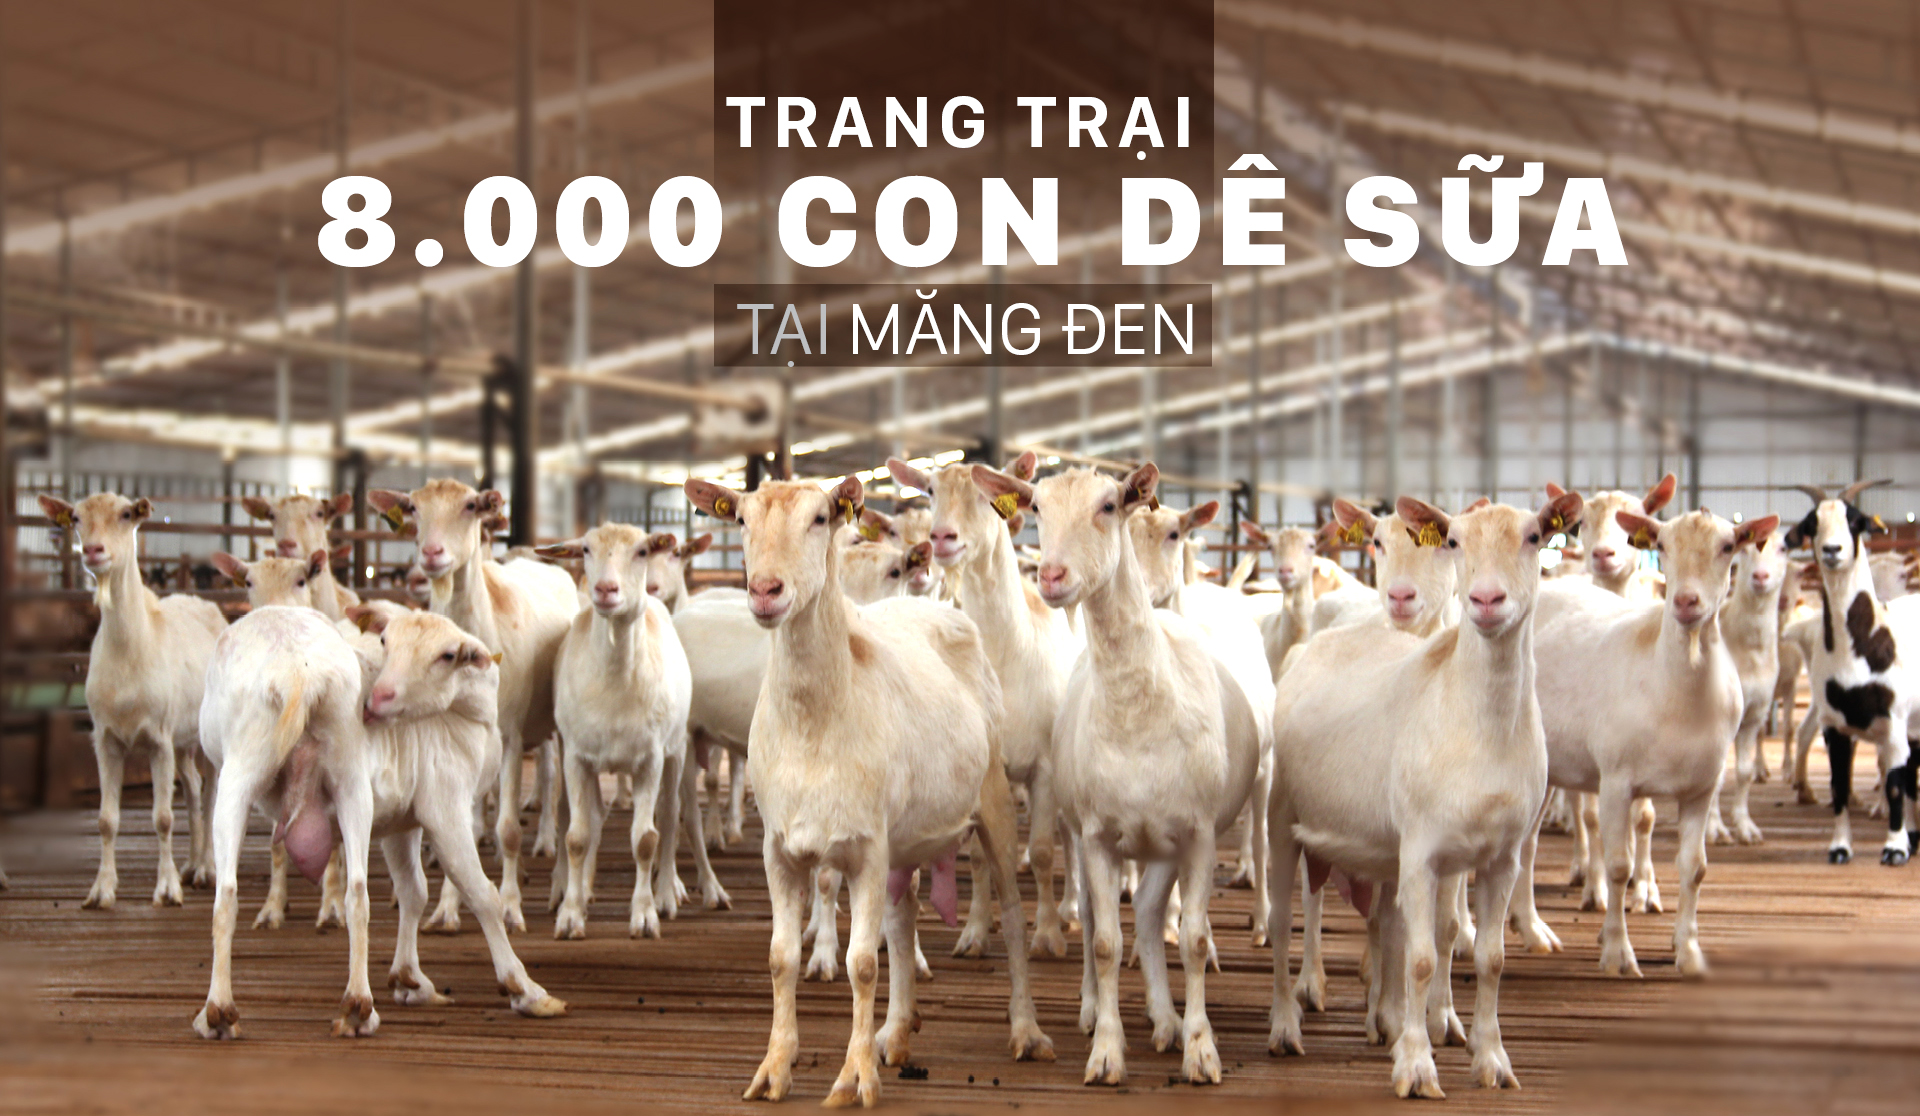 Trang trại  8.000 con dê sữa tại Măng Đen